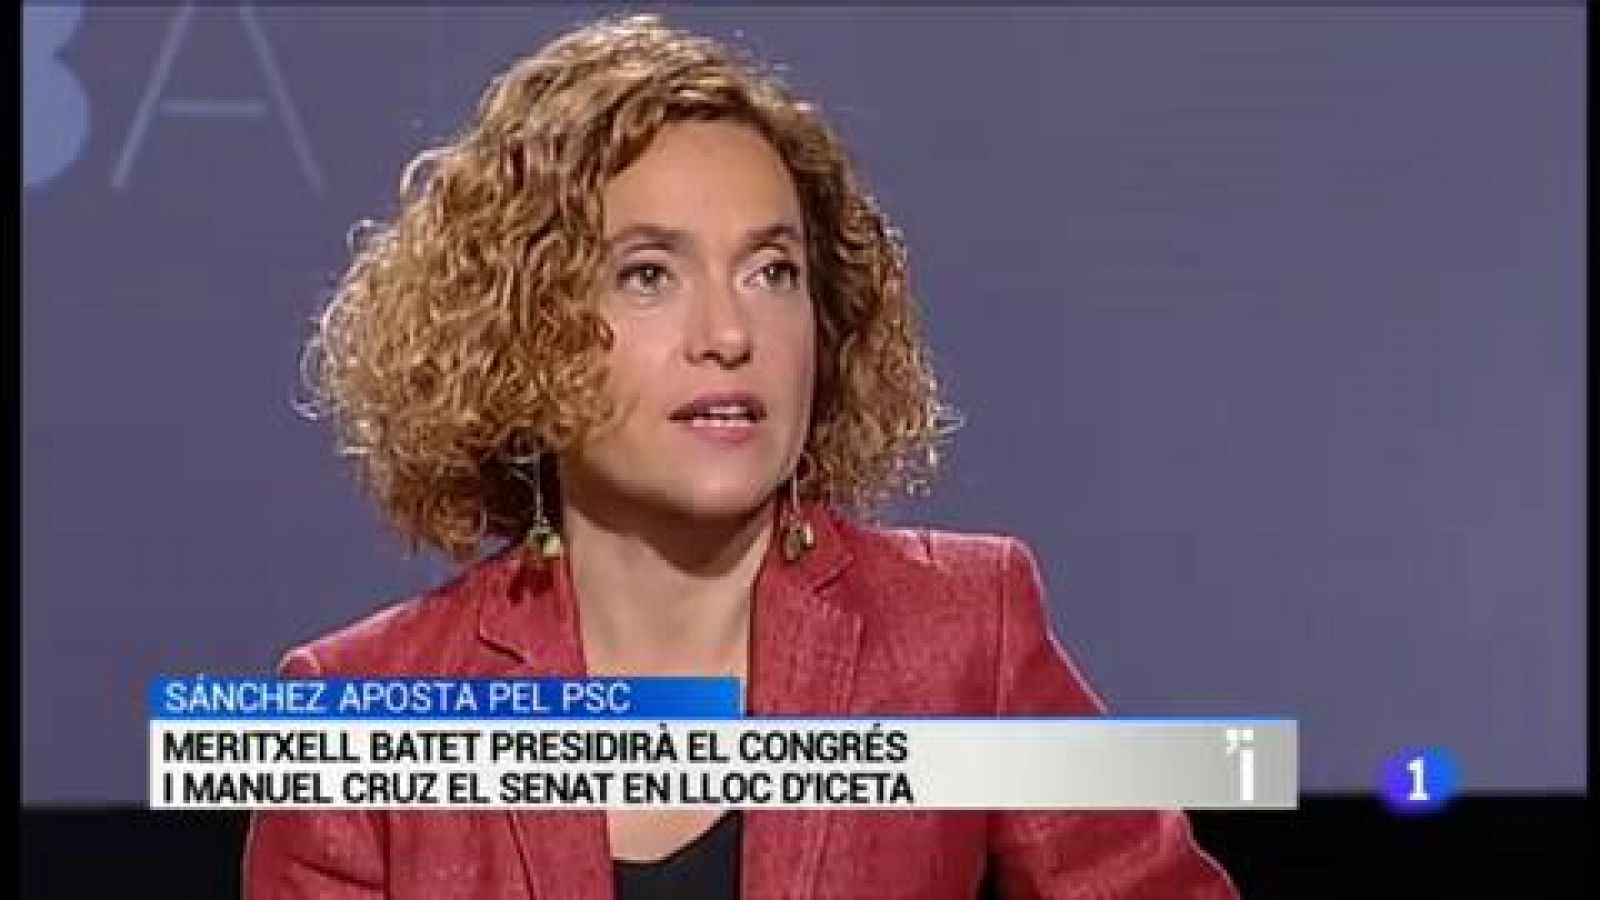 L'Informatiu | Sumari de les notícies del 17/05/2019 - RTVE.es